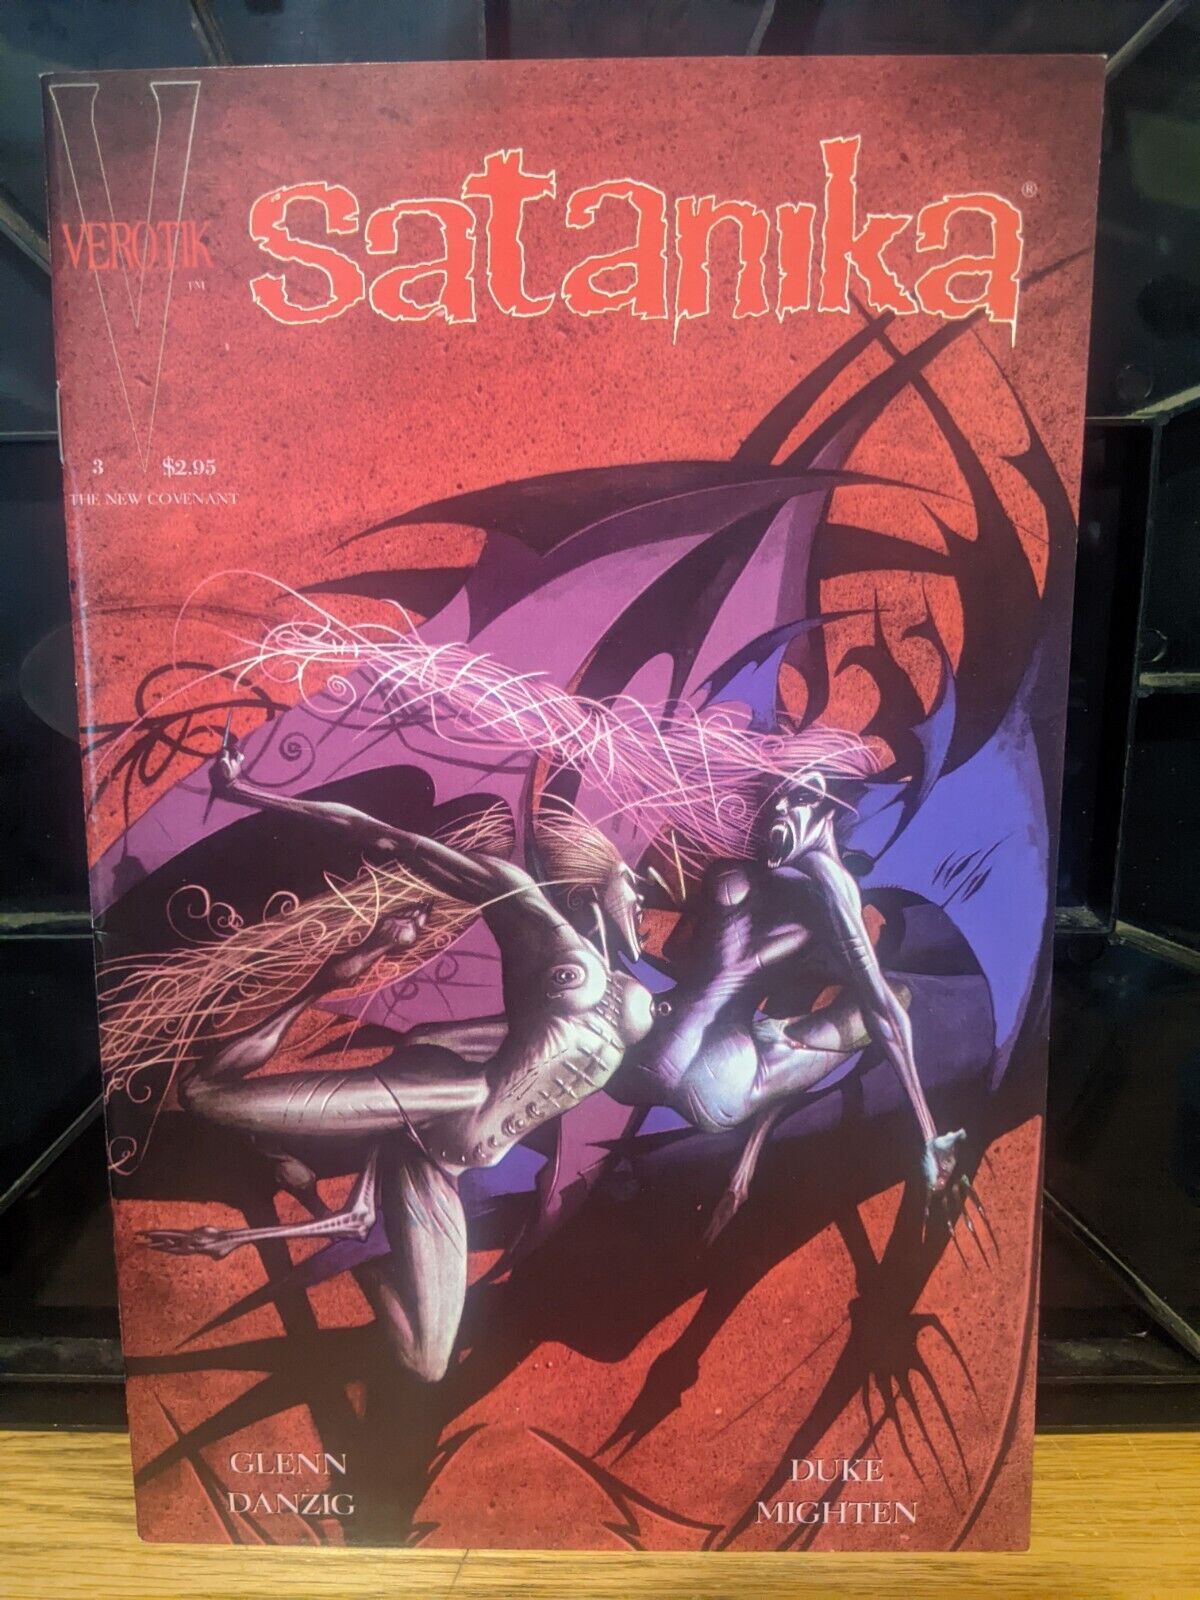 Satanika #3 - July 1995 - 1st Printing - Verotik VF/NM